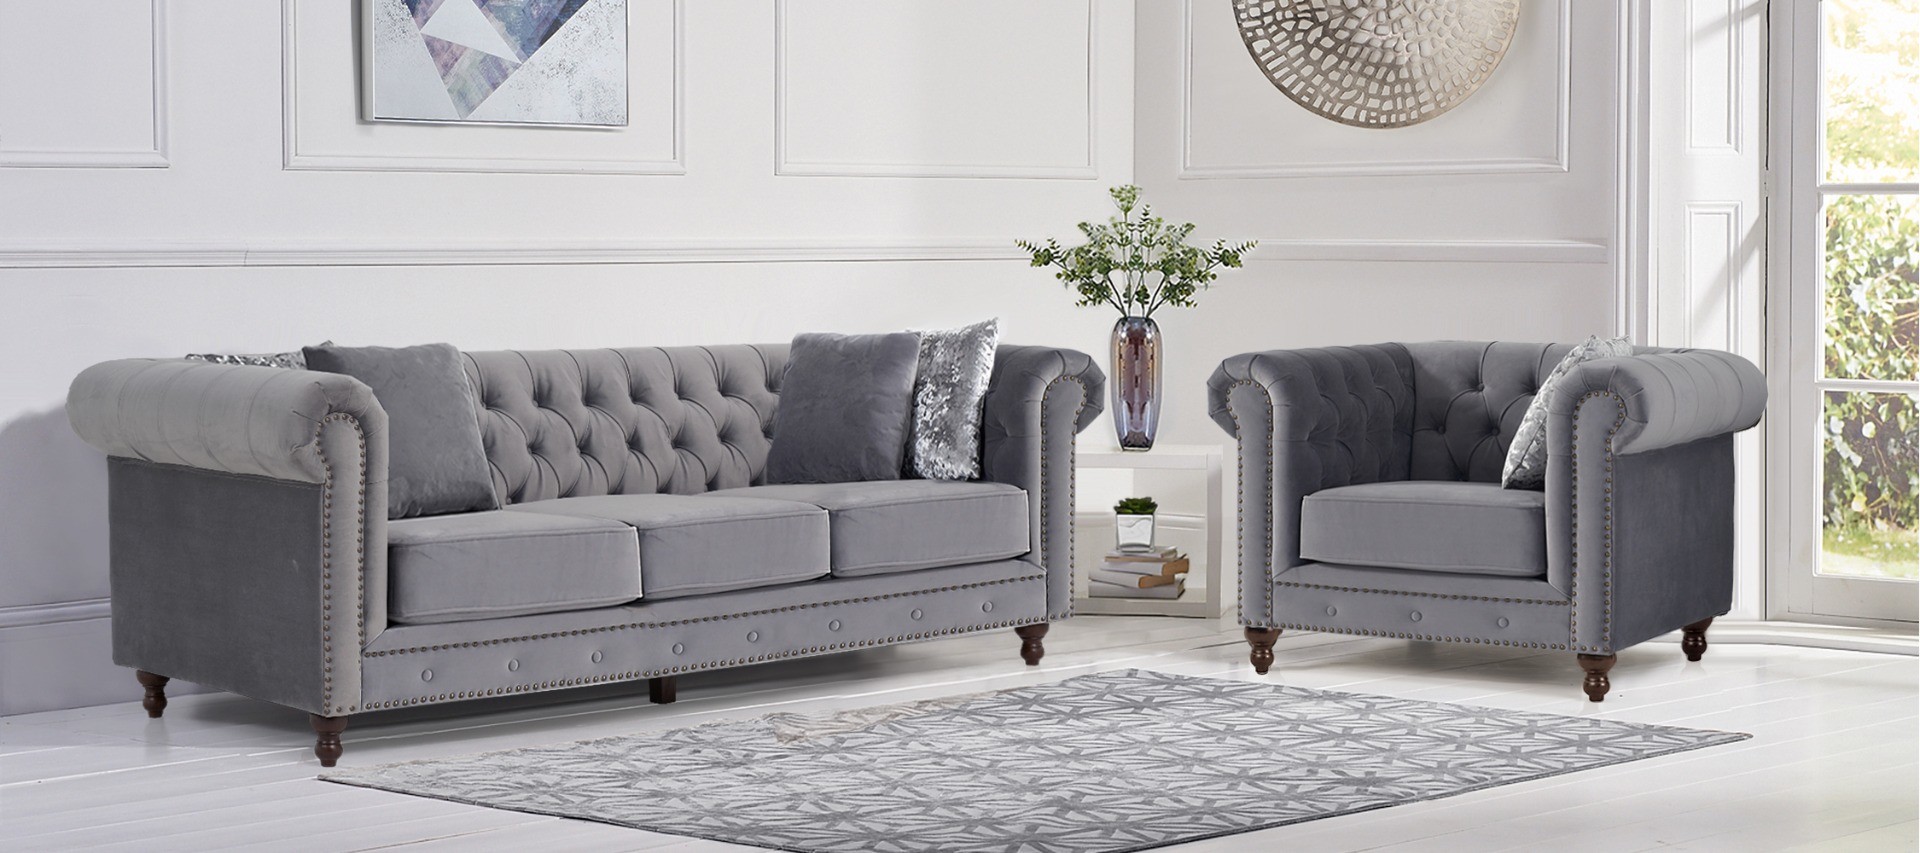 Photo 4 of Westminster chesterfield light grey velvet 3 seater sofa